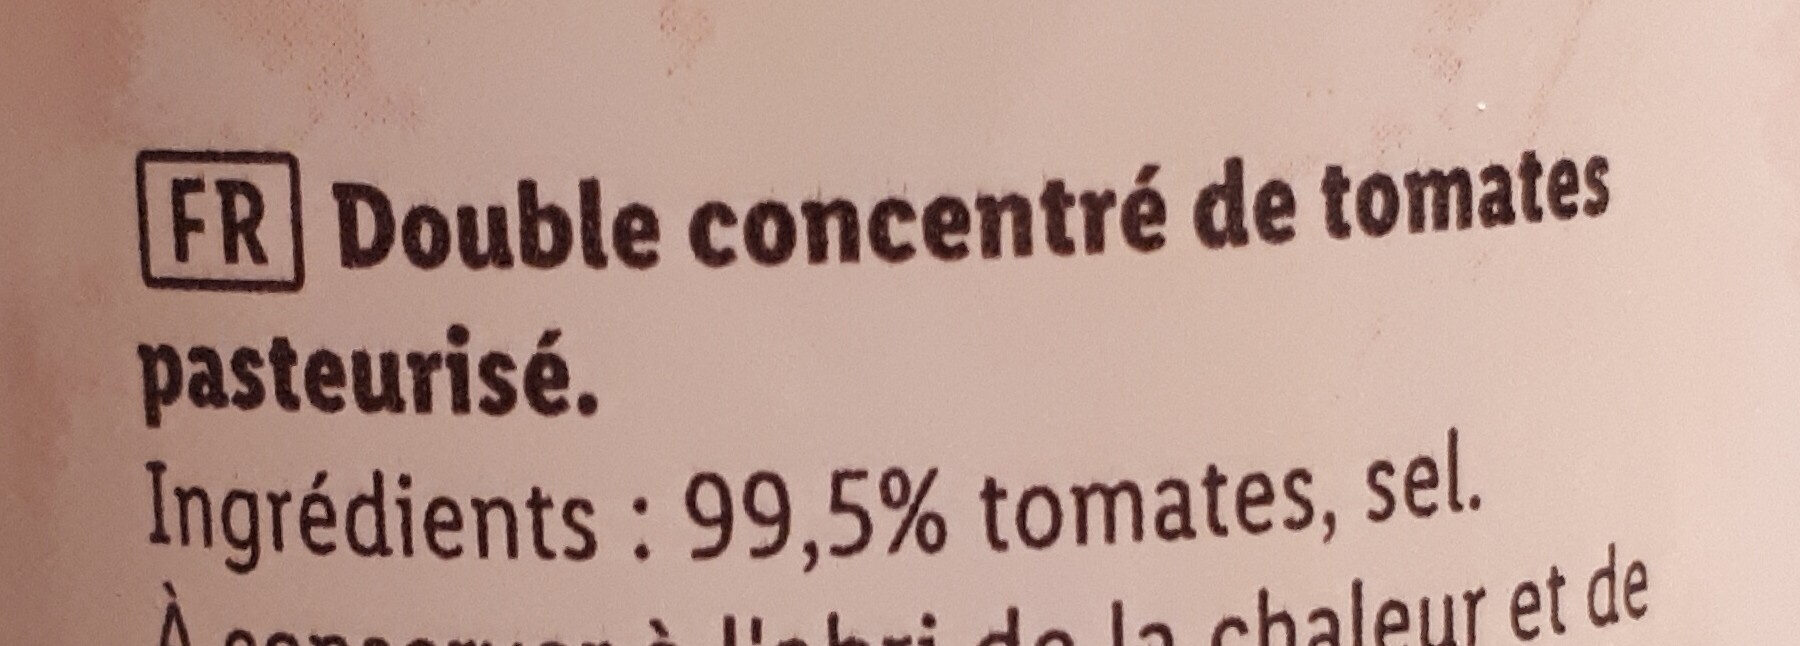 Double concentré de tomates - Ingrediënten - fr